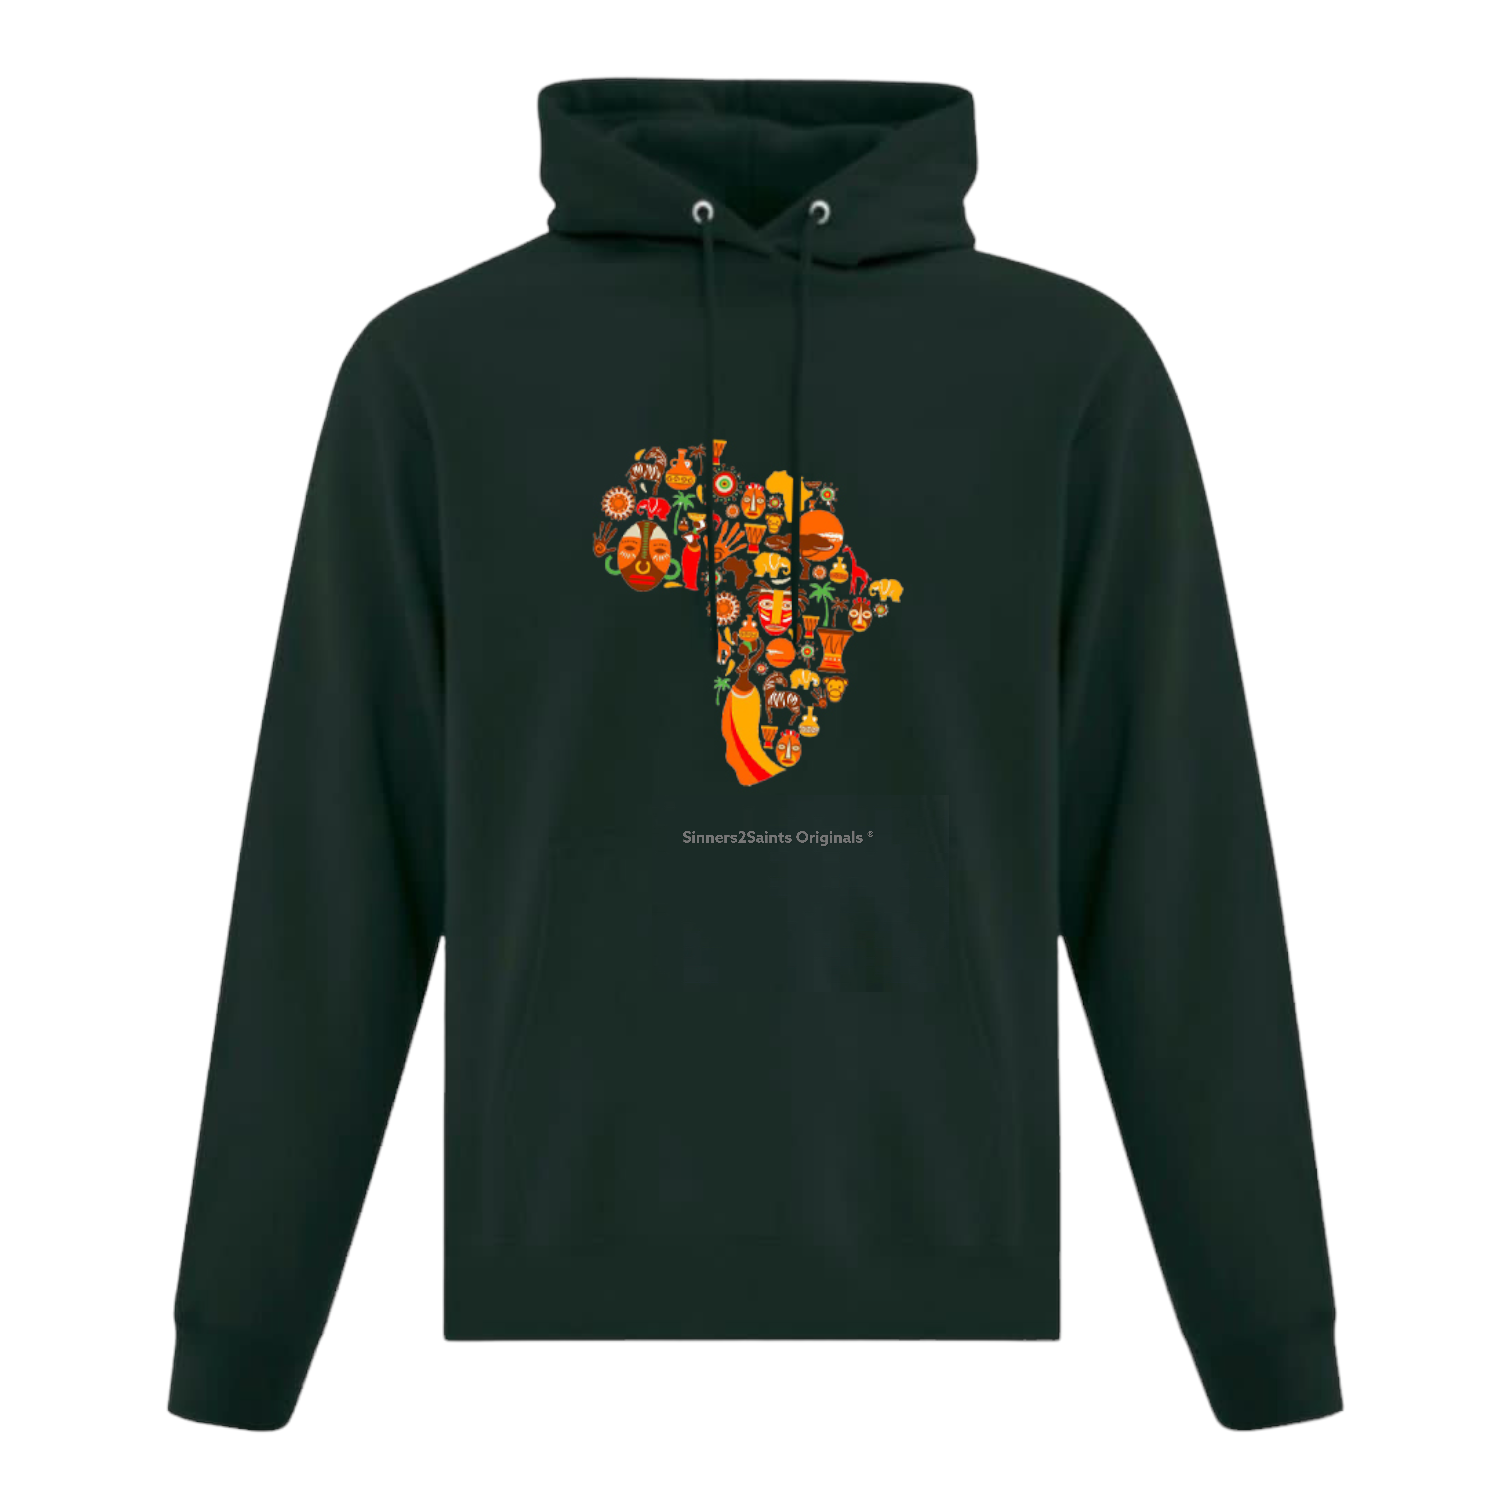 Origins Hoodie - African Inspired theme - Sinners2Saints